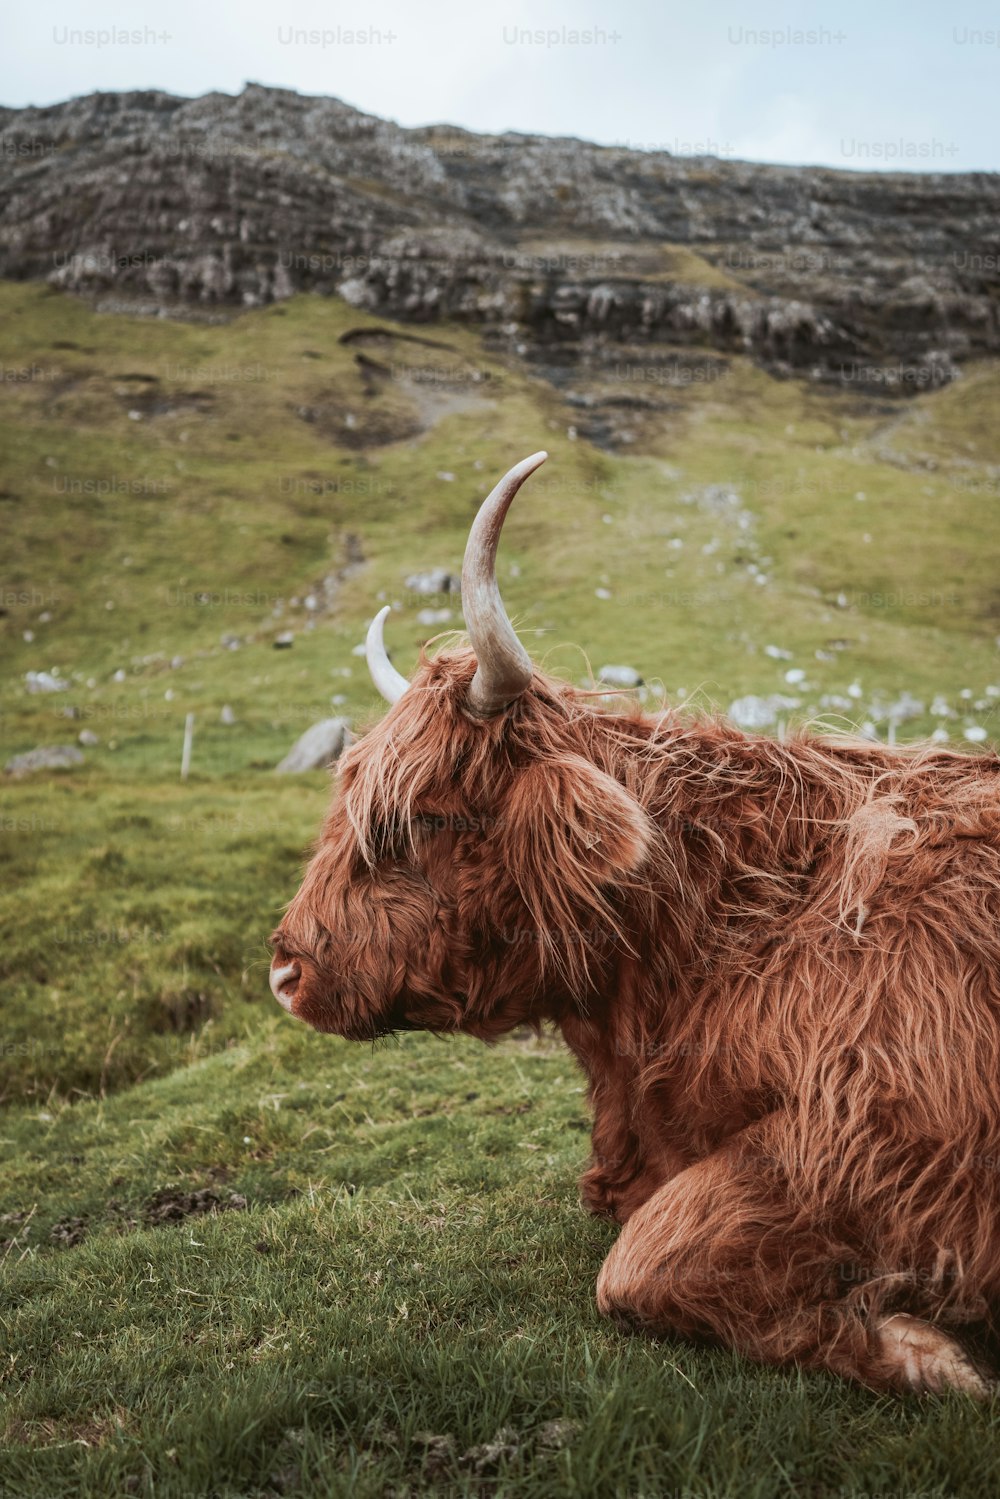 Una vaca marrón con cuernos largos tendidos en la hierba